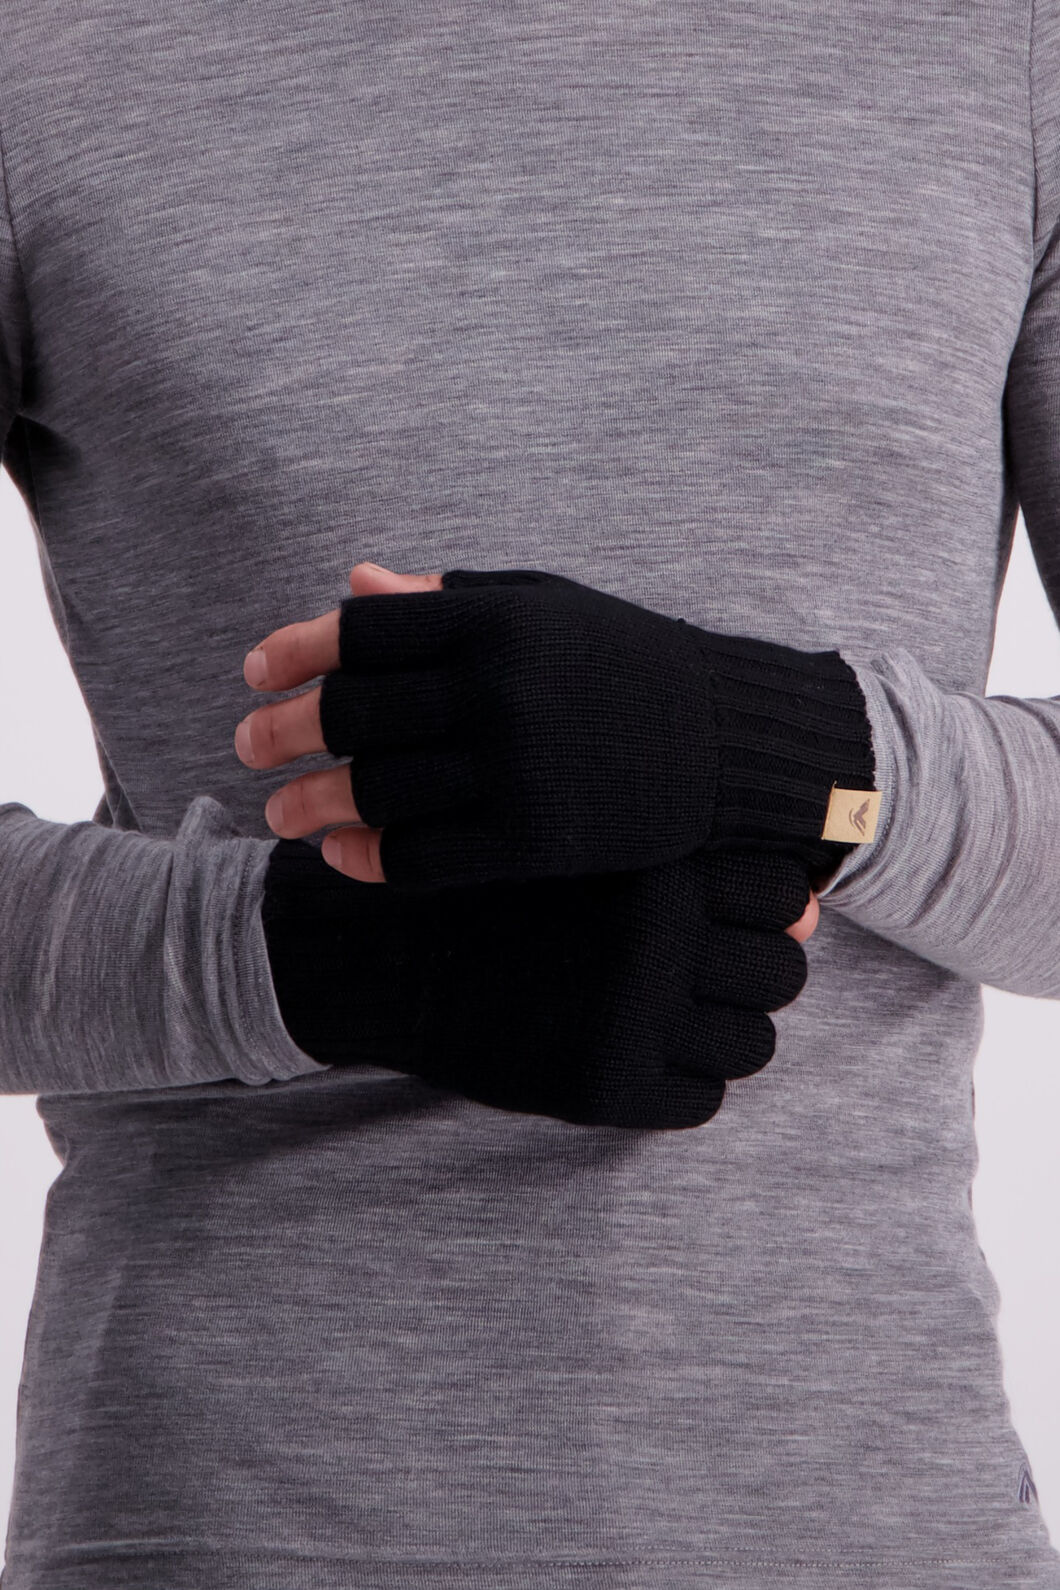 Macpac Tech Wool Gloves